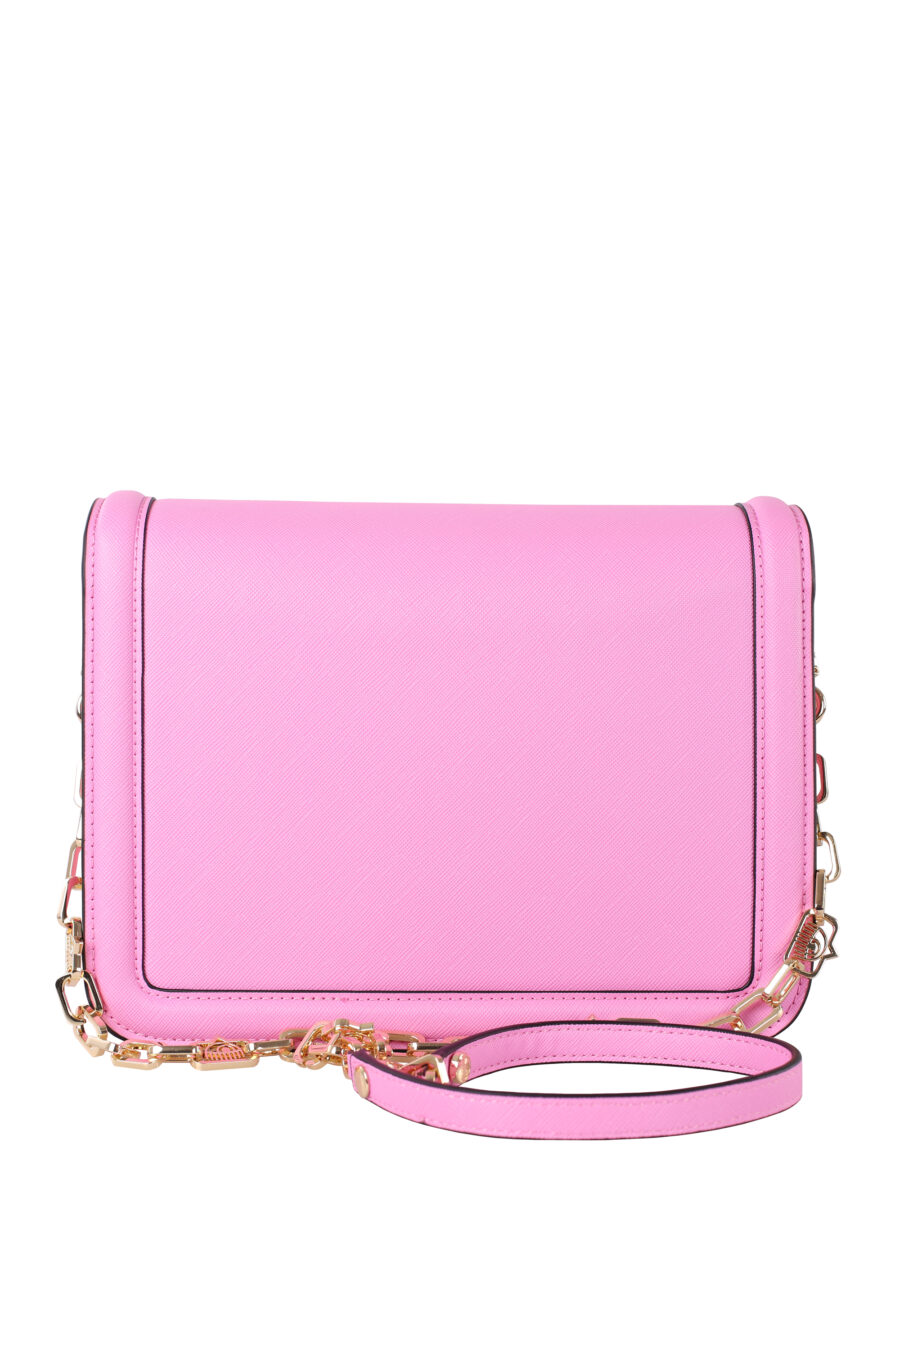 Pink shoulder bag with gold eye logo - IMG 5992